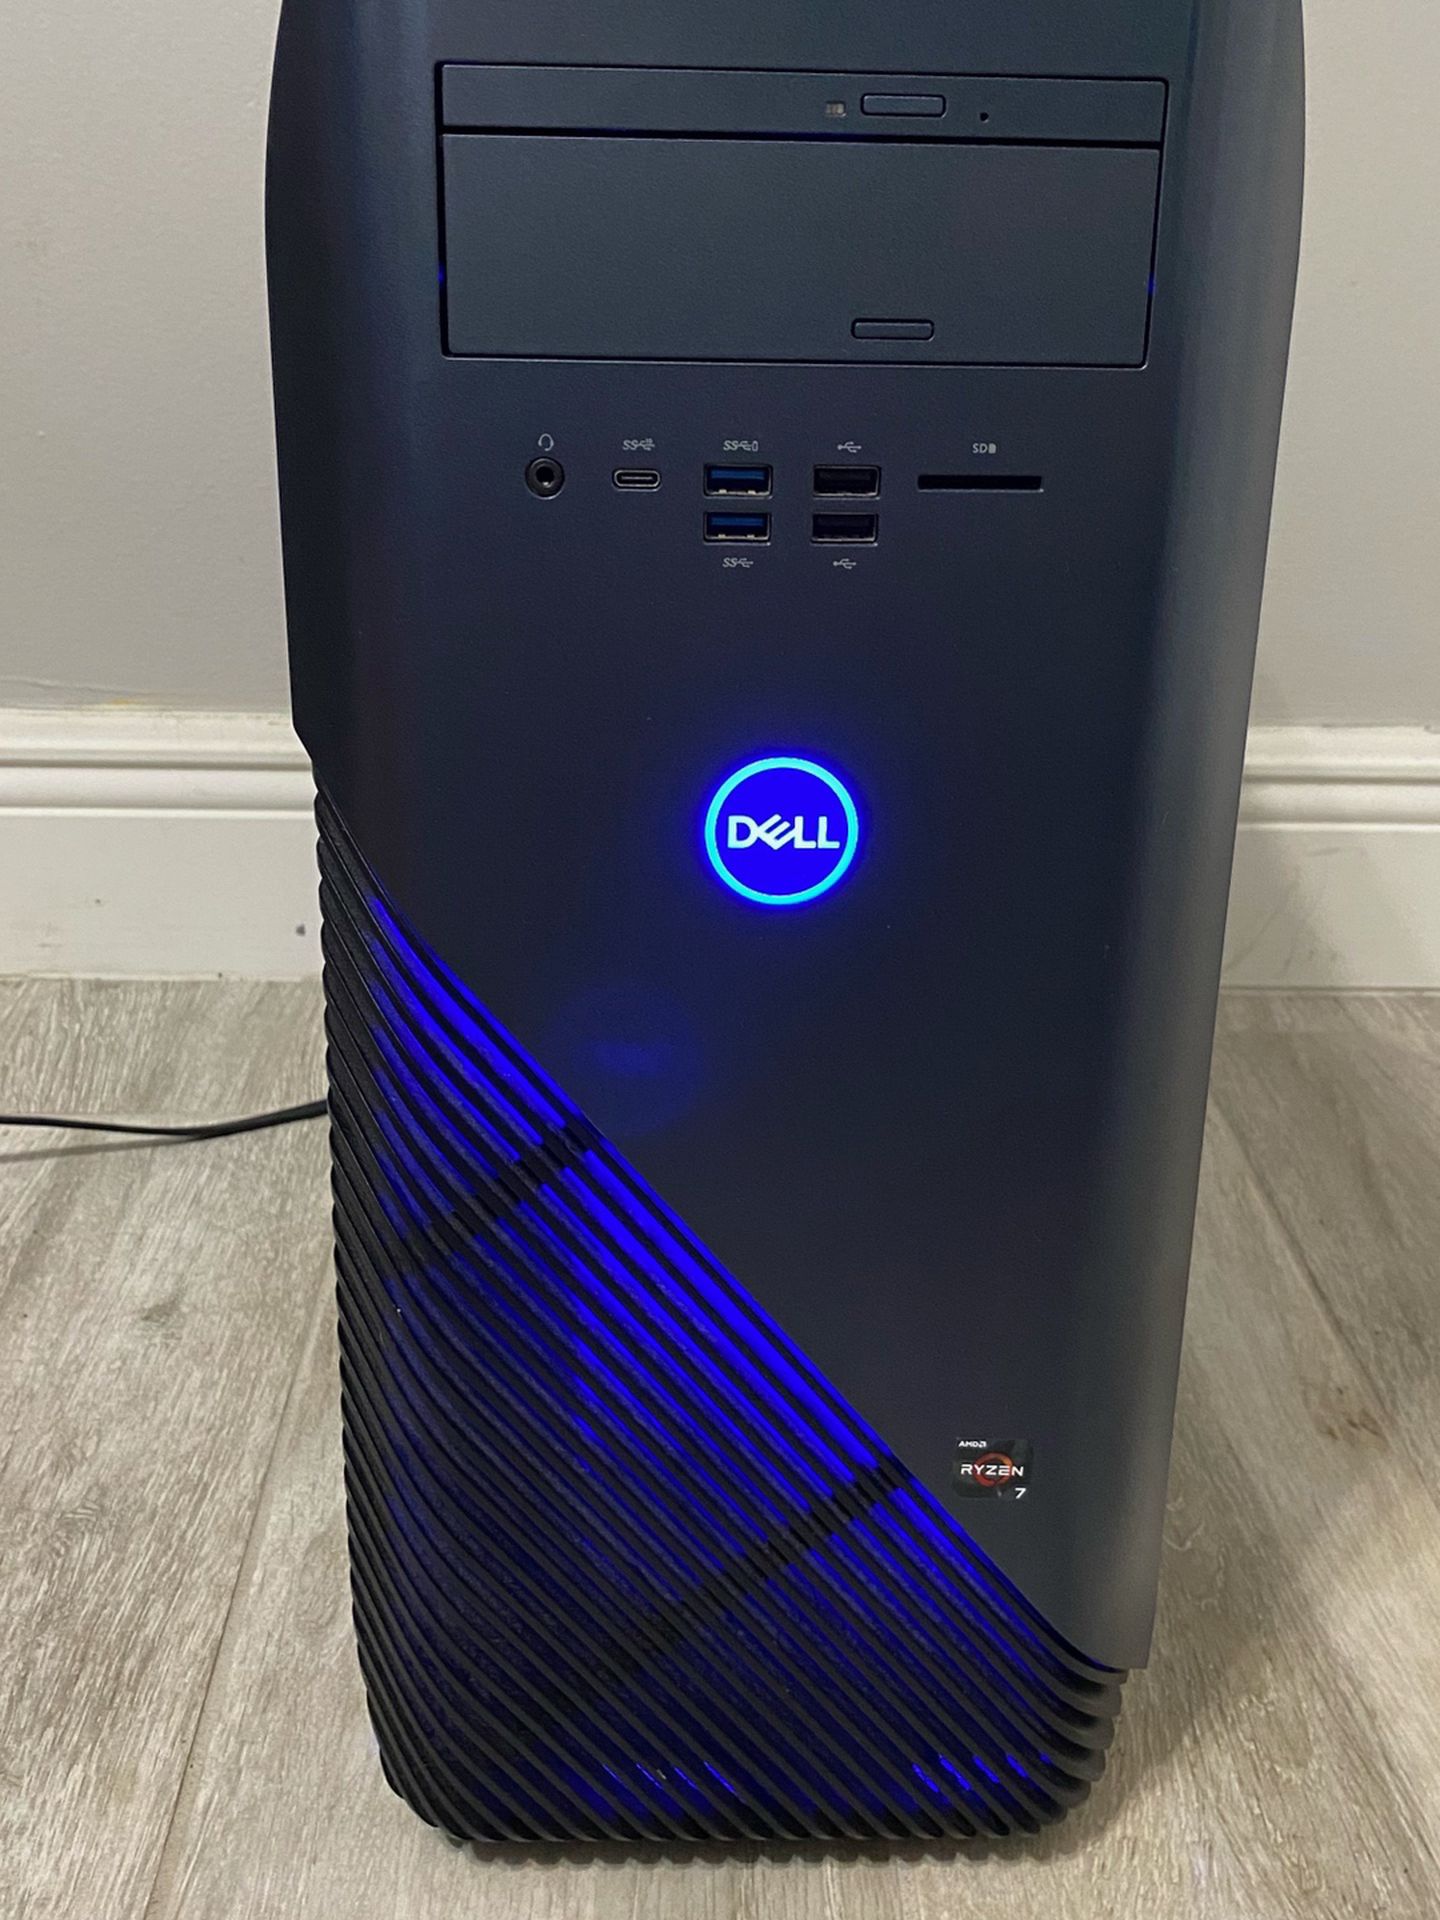 Dell Inspiron 5675 Gaming Desktop